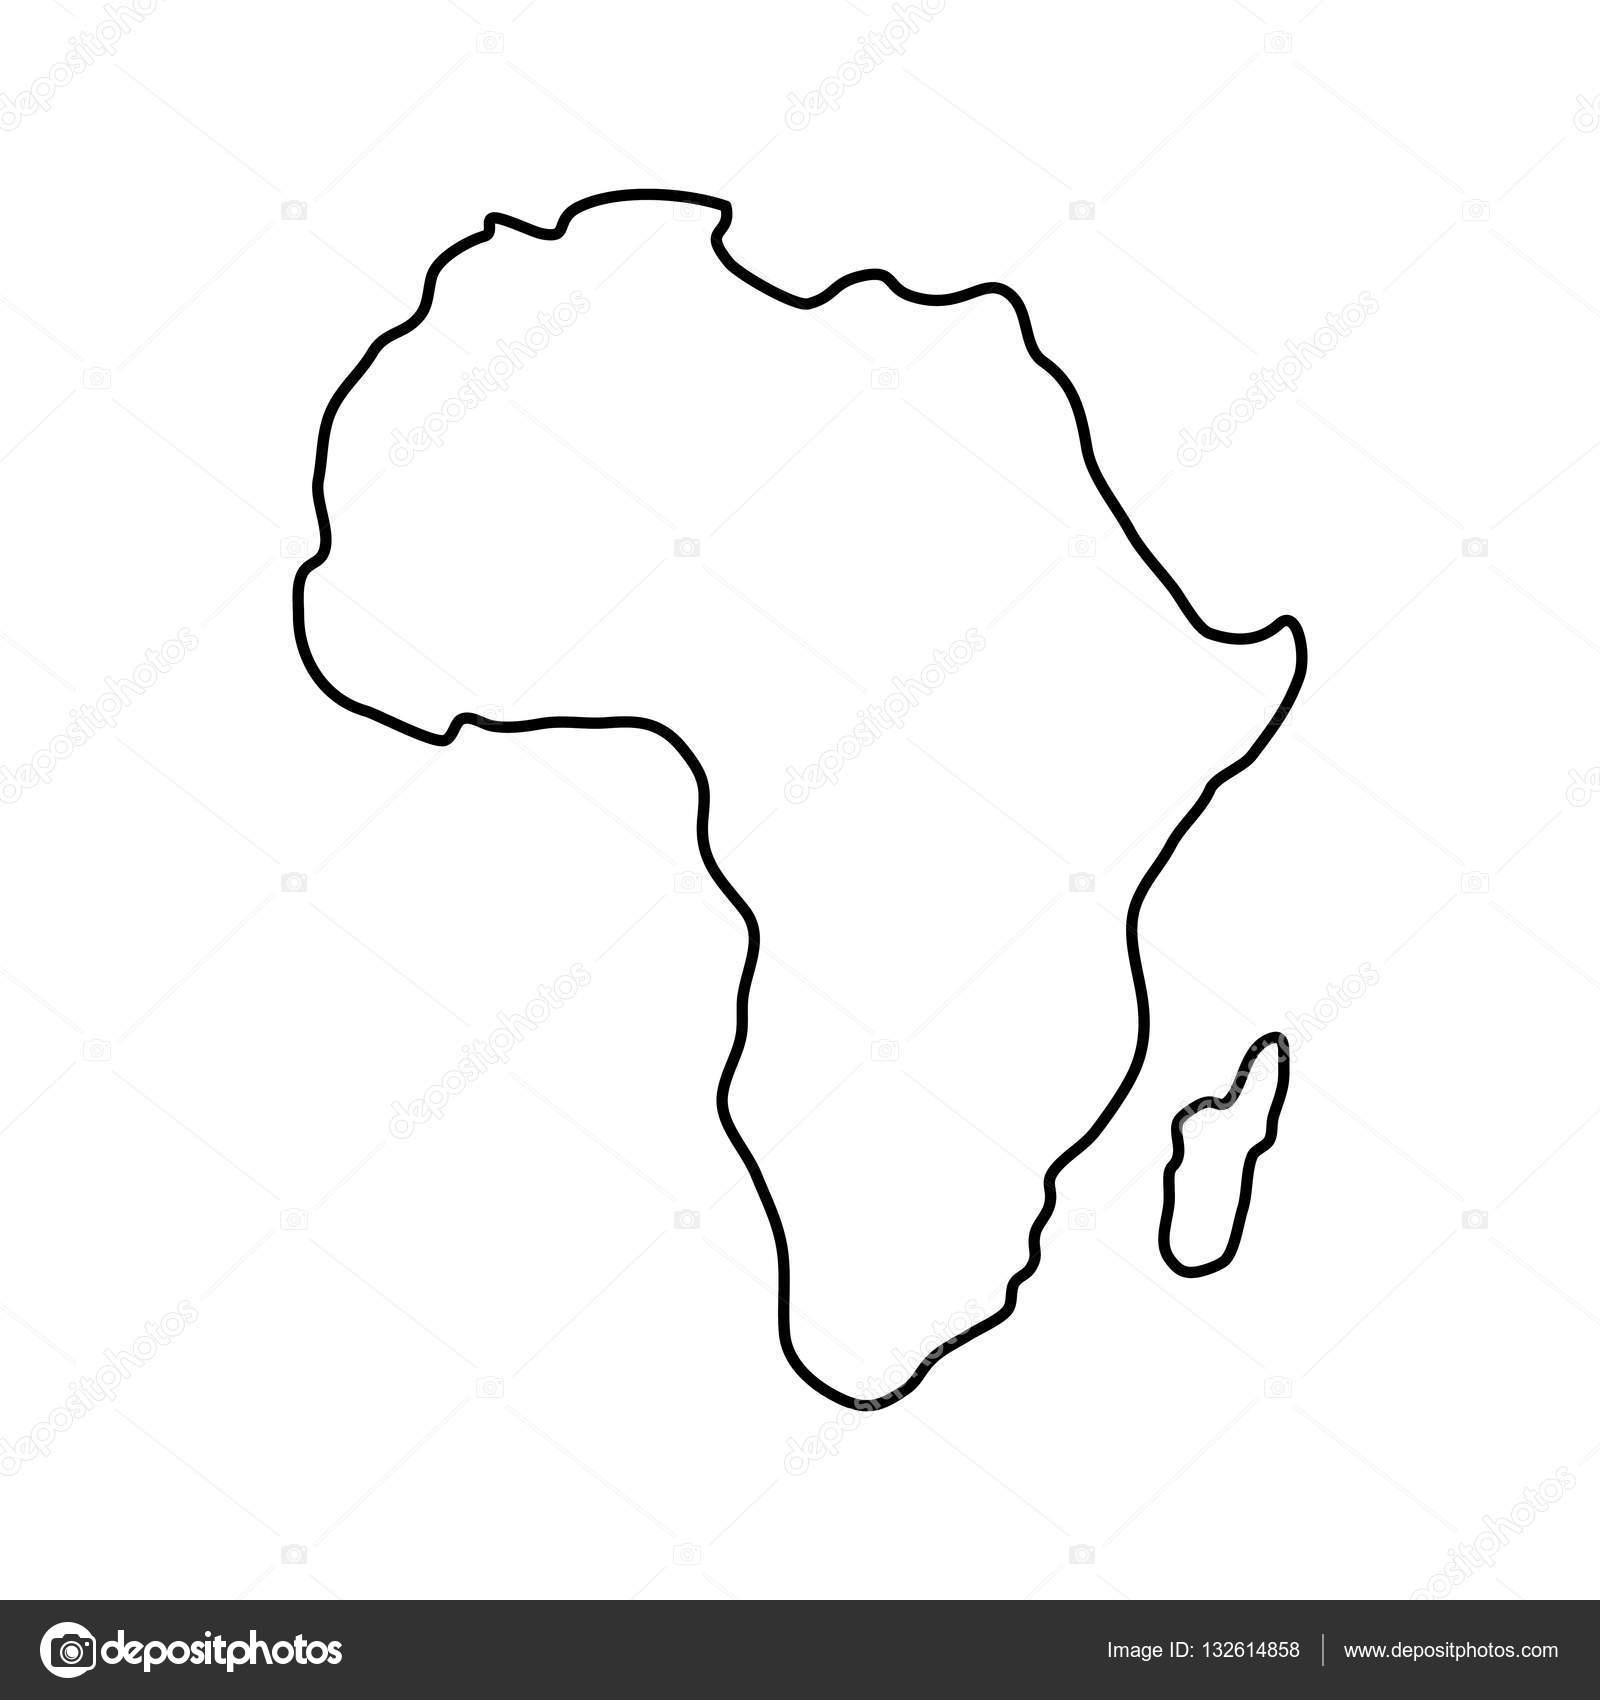 Mapa En Blanco De Africa Ilustracion Vector Mapa Africa Politico Images 5951